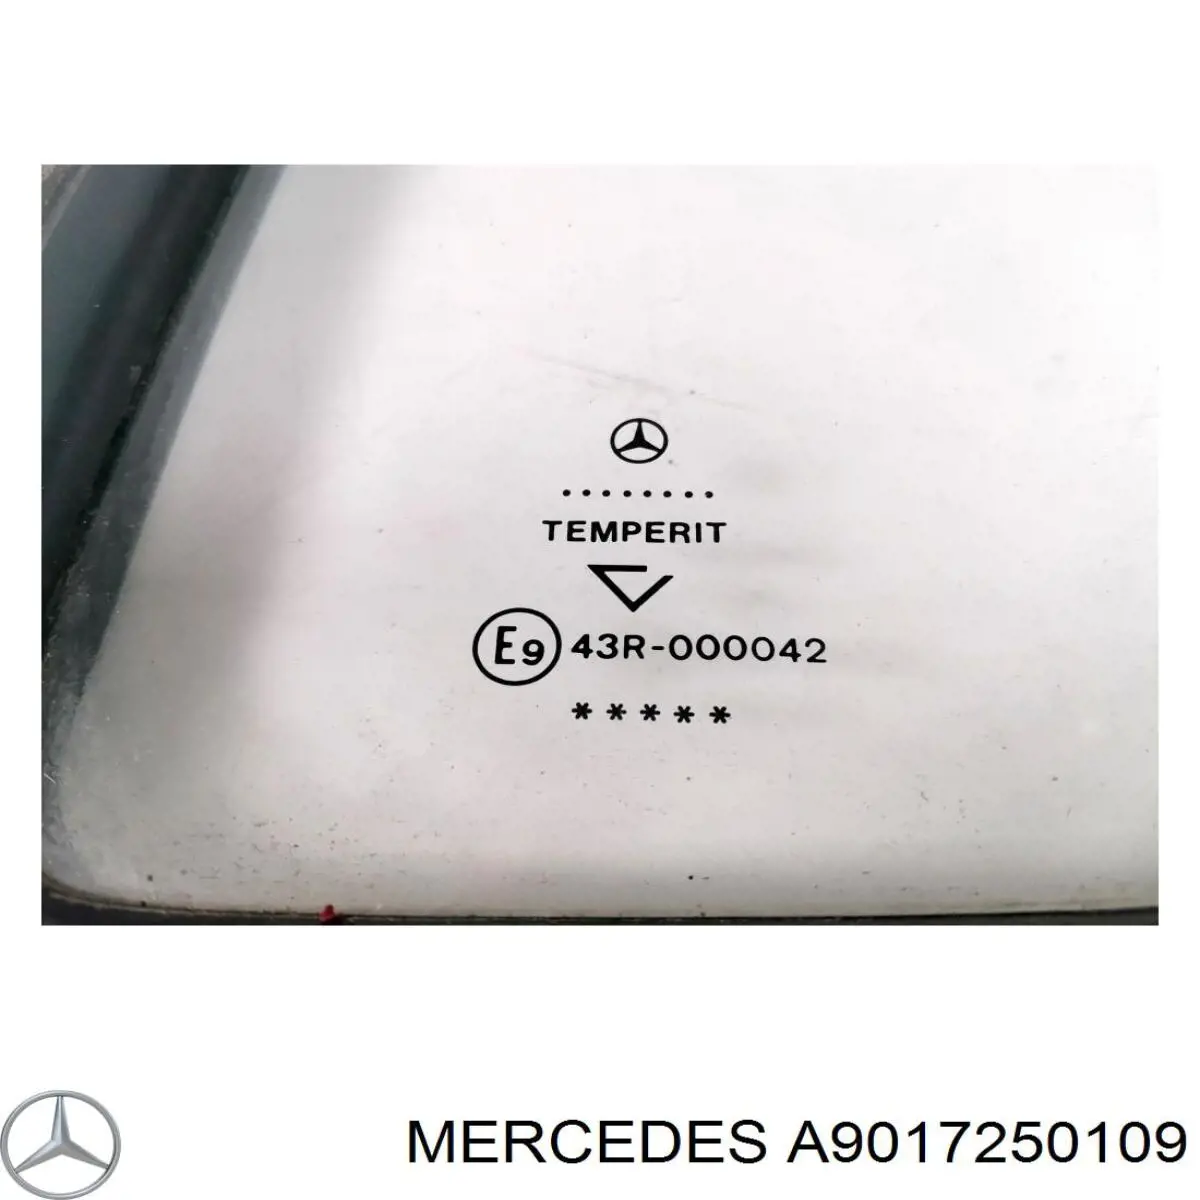 A9017250109 Mercedes скло-кватирка двері, передній, лівій